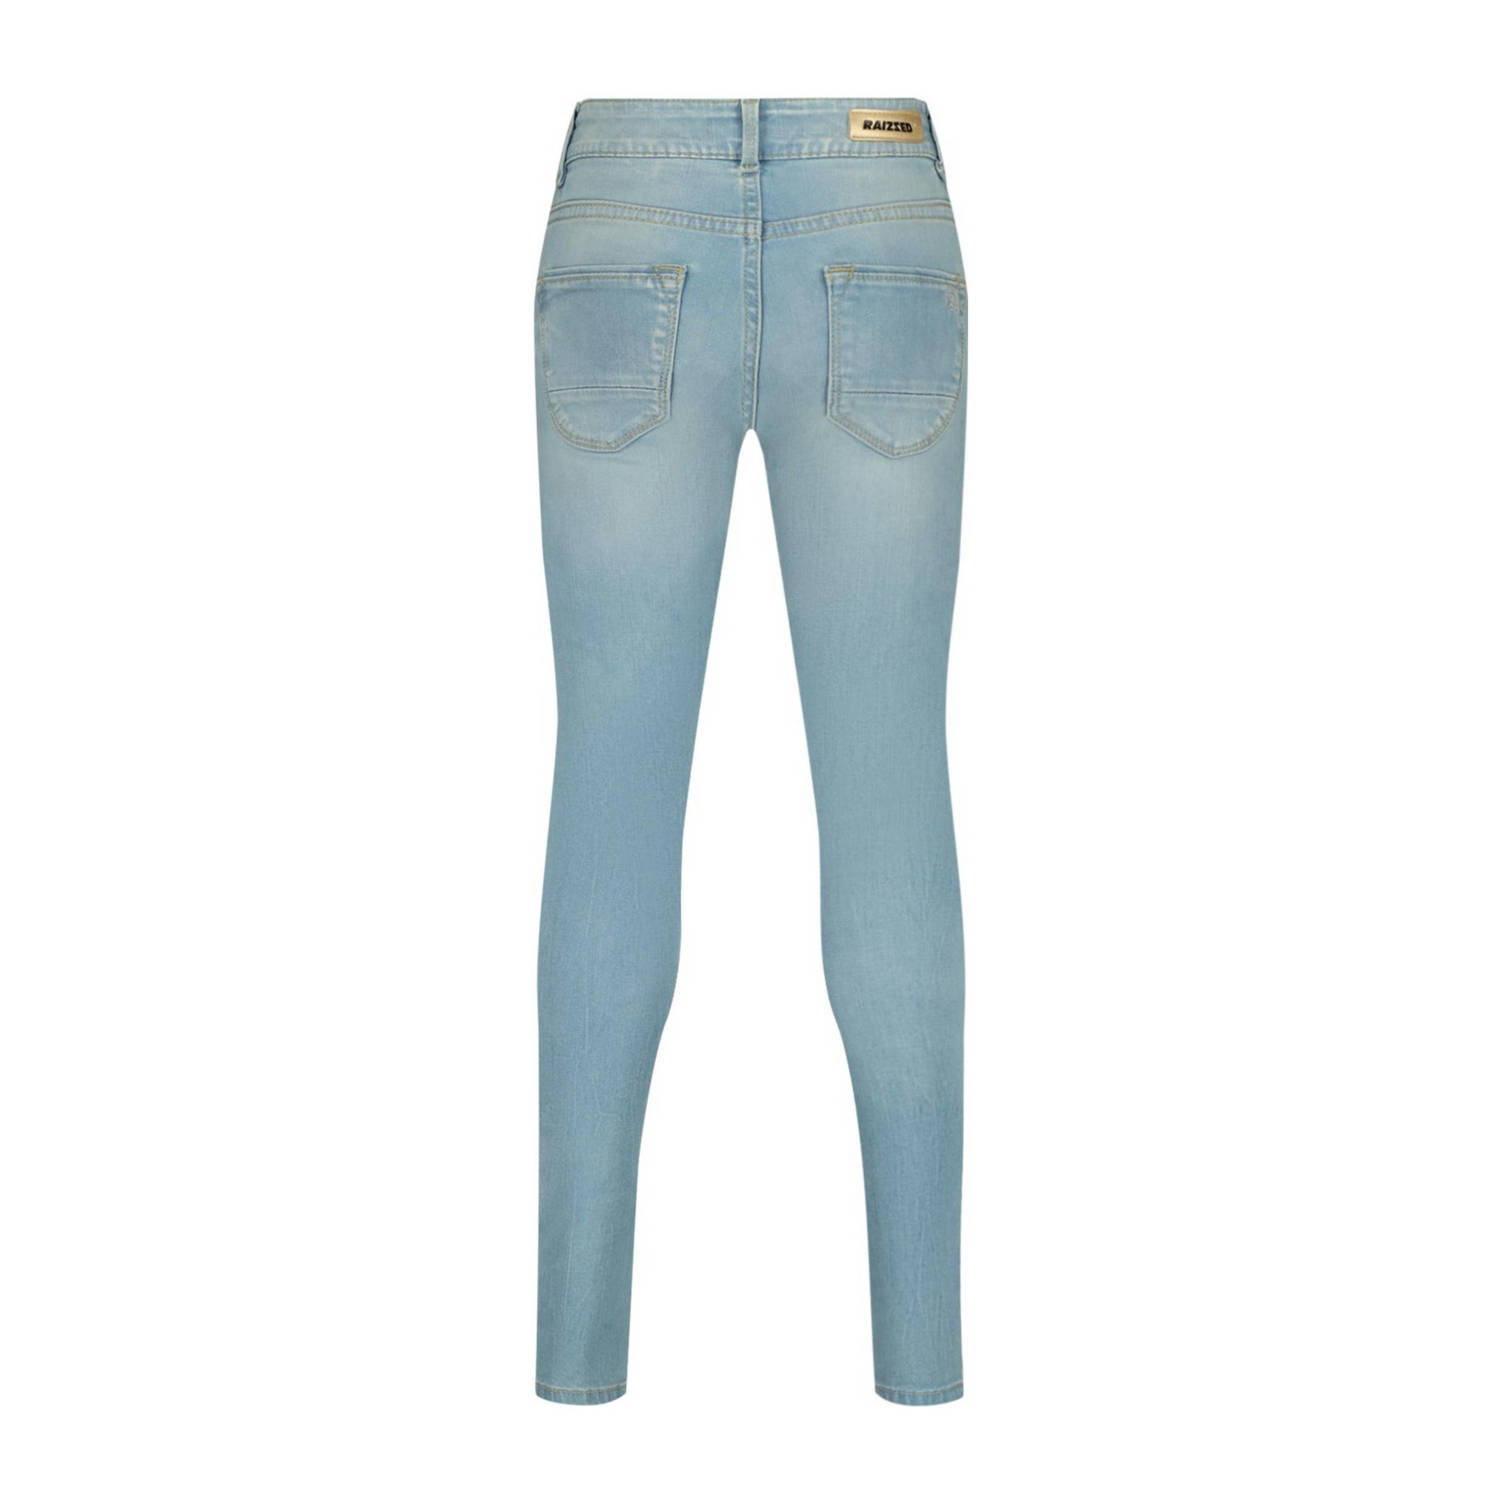 Raizzed skinny jeans Chelsea light blue stone